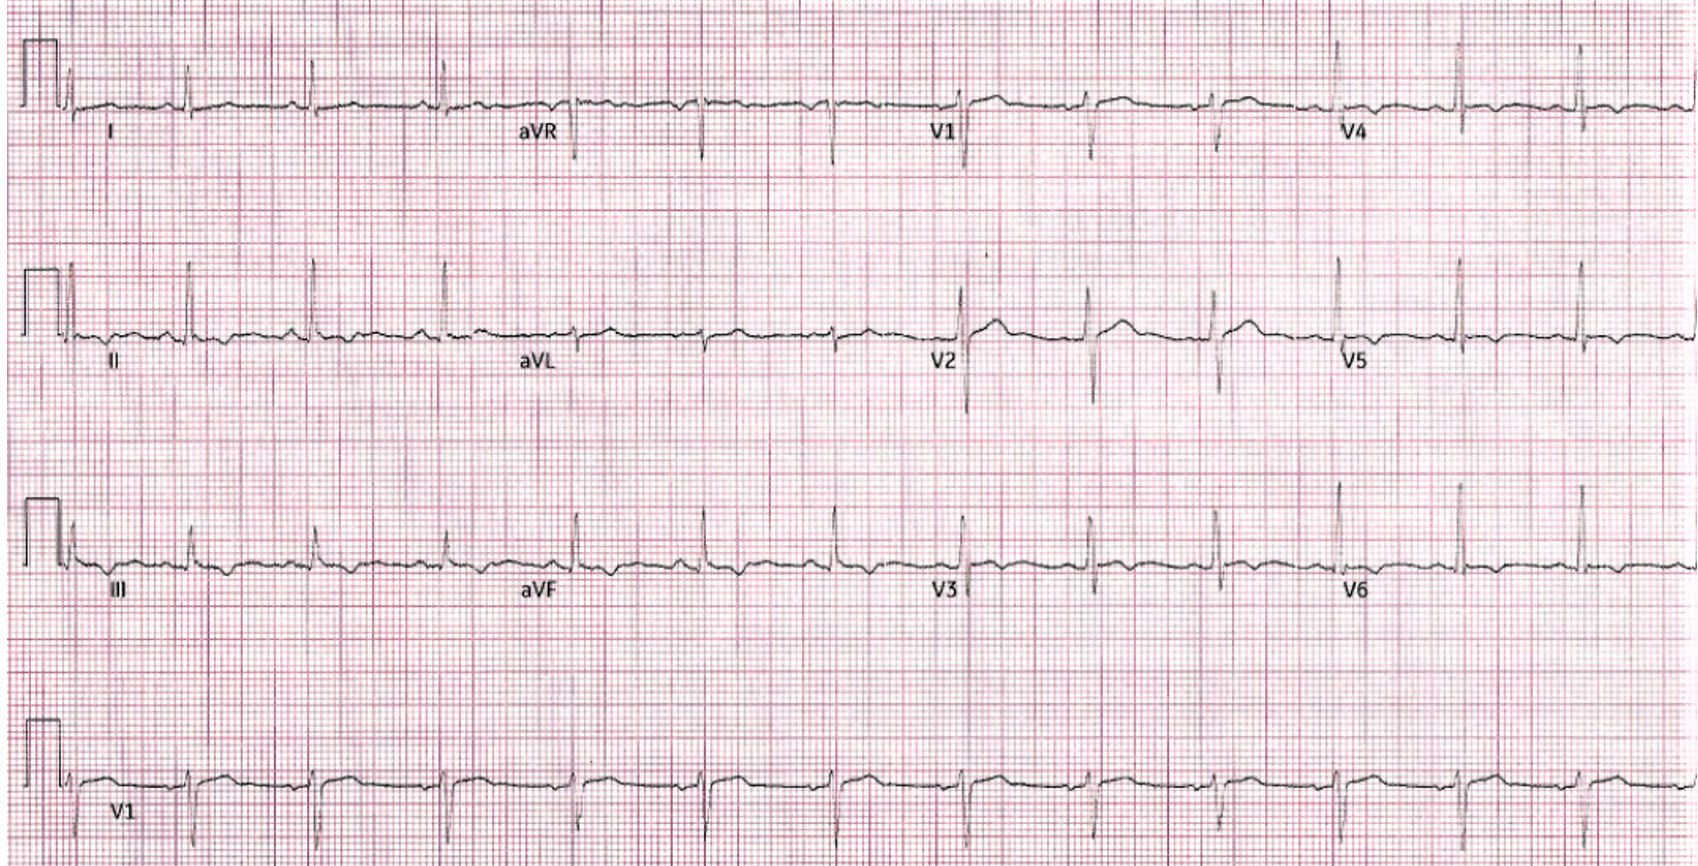 EKG of patient